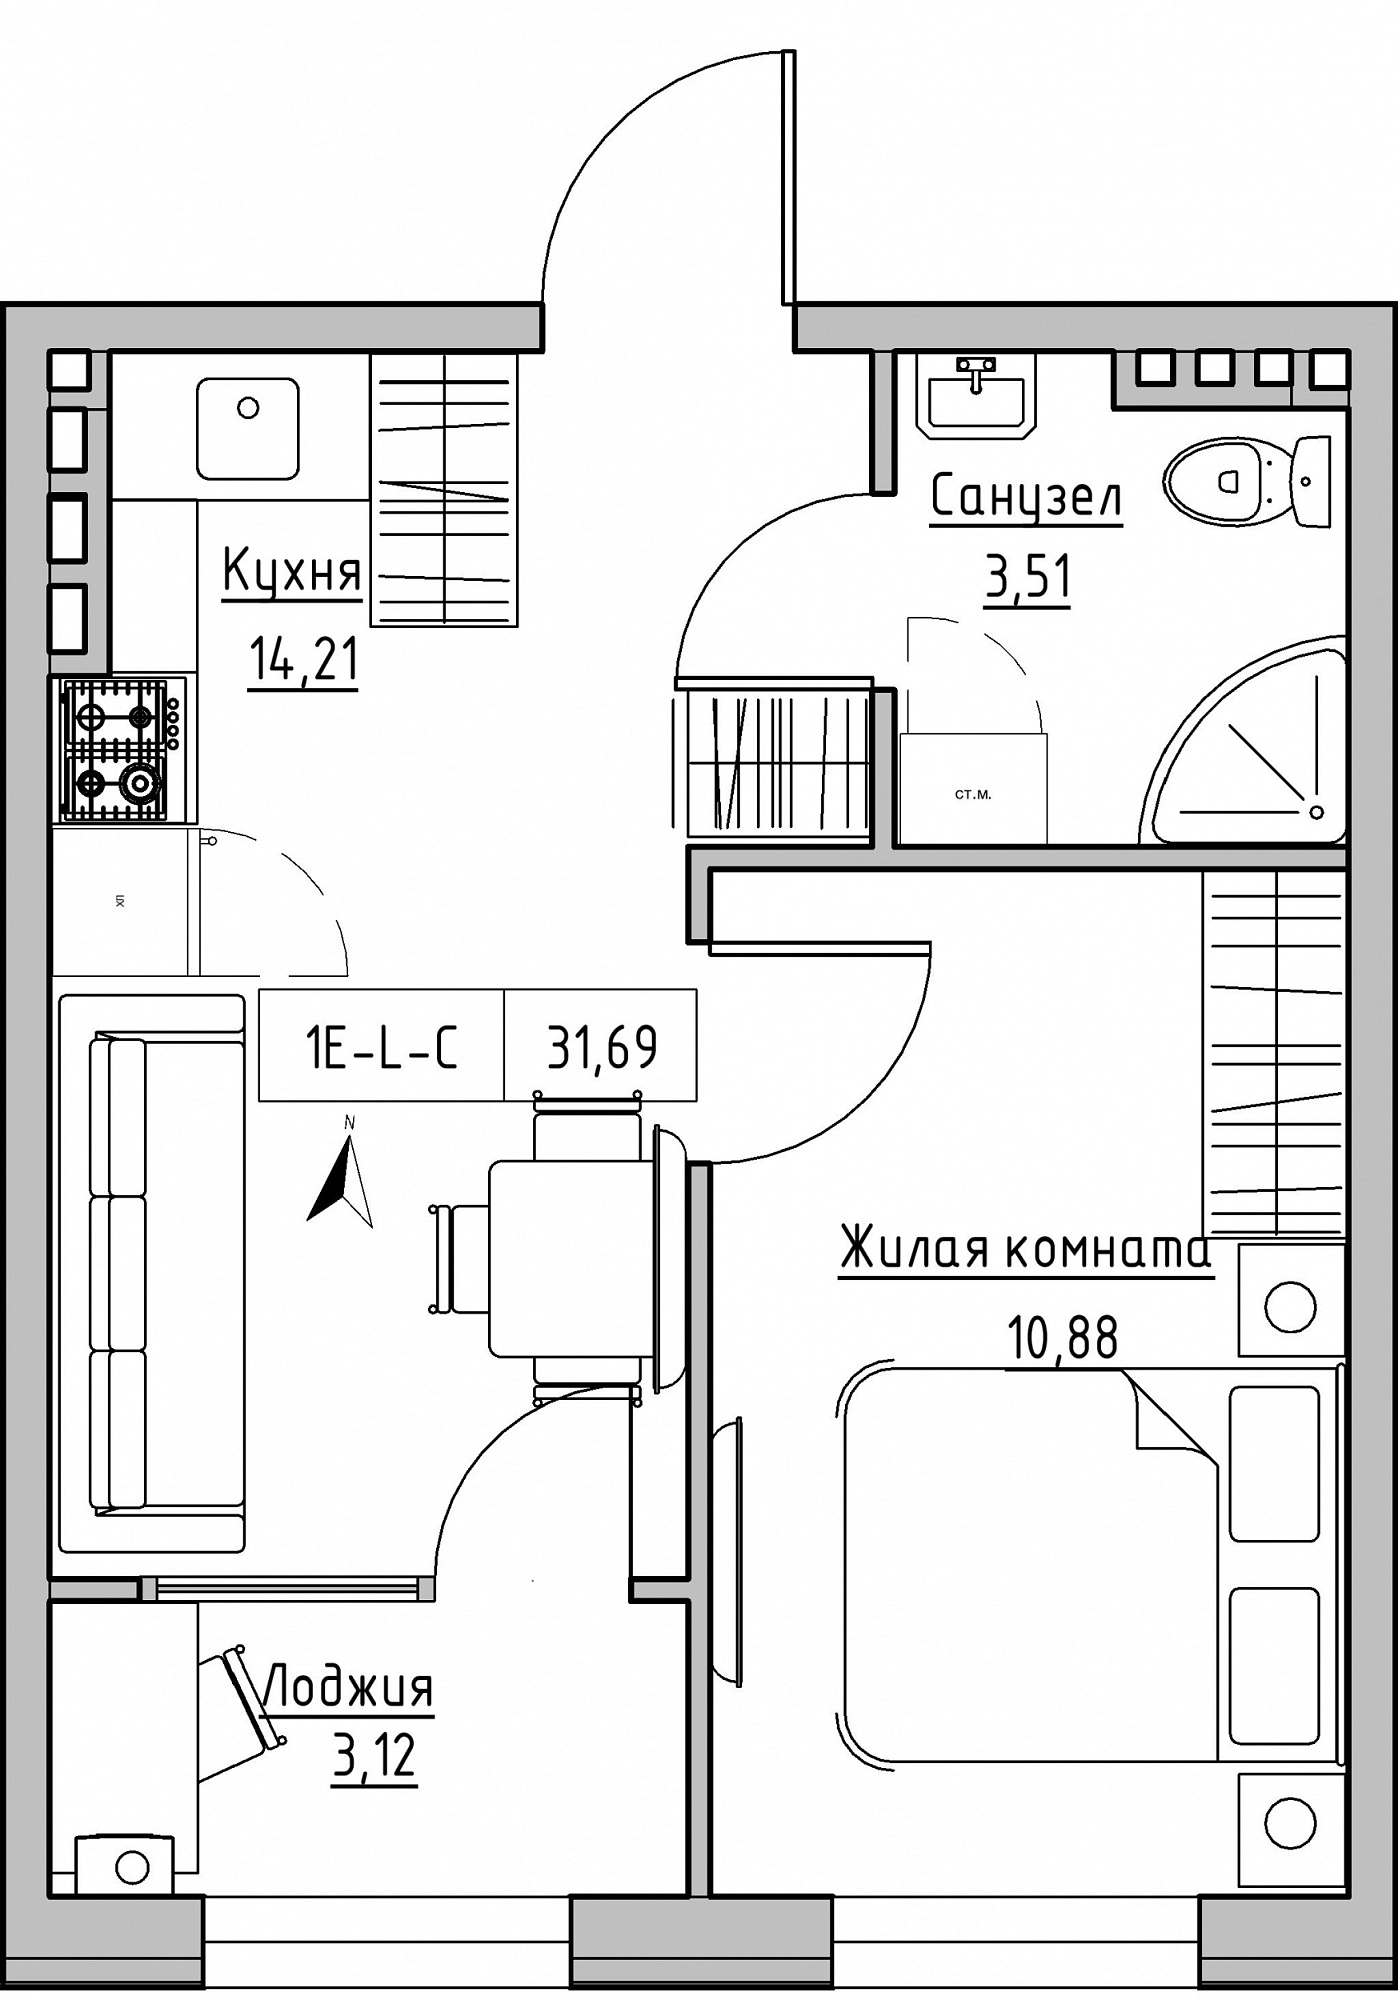 Планировка 1-к квартира площей 31.69м2, KS-024-03/0007.